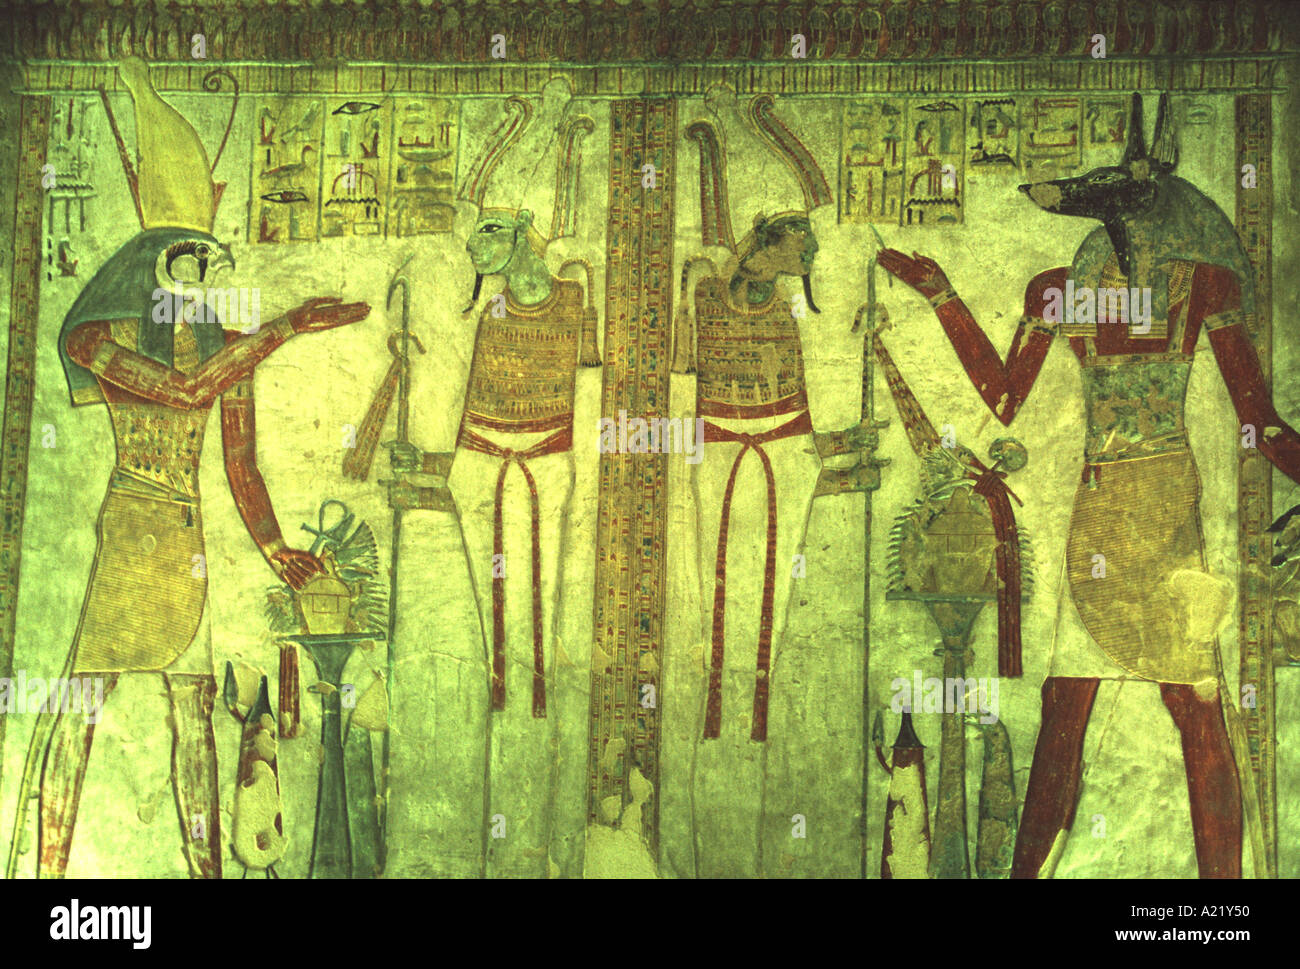 Mur peint en relief tombe de Thoutmosis 1 Vallée des Rois Egypte Louxor Banque D'Images